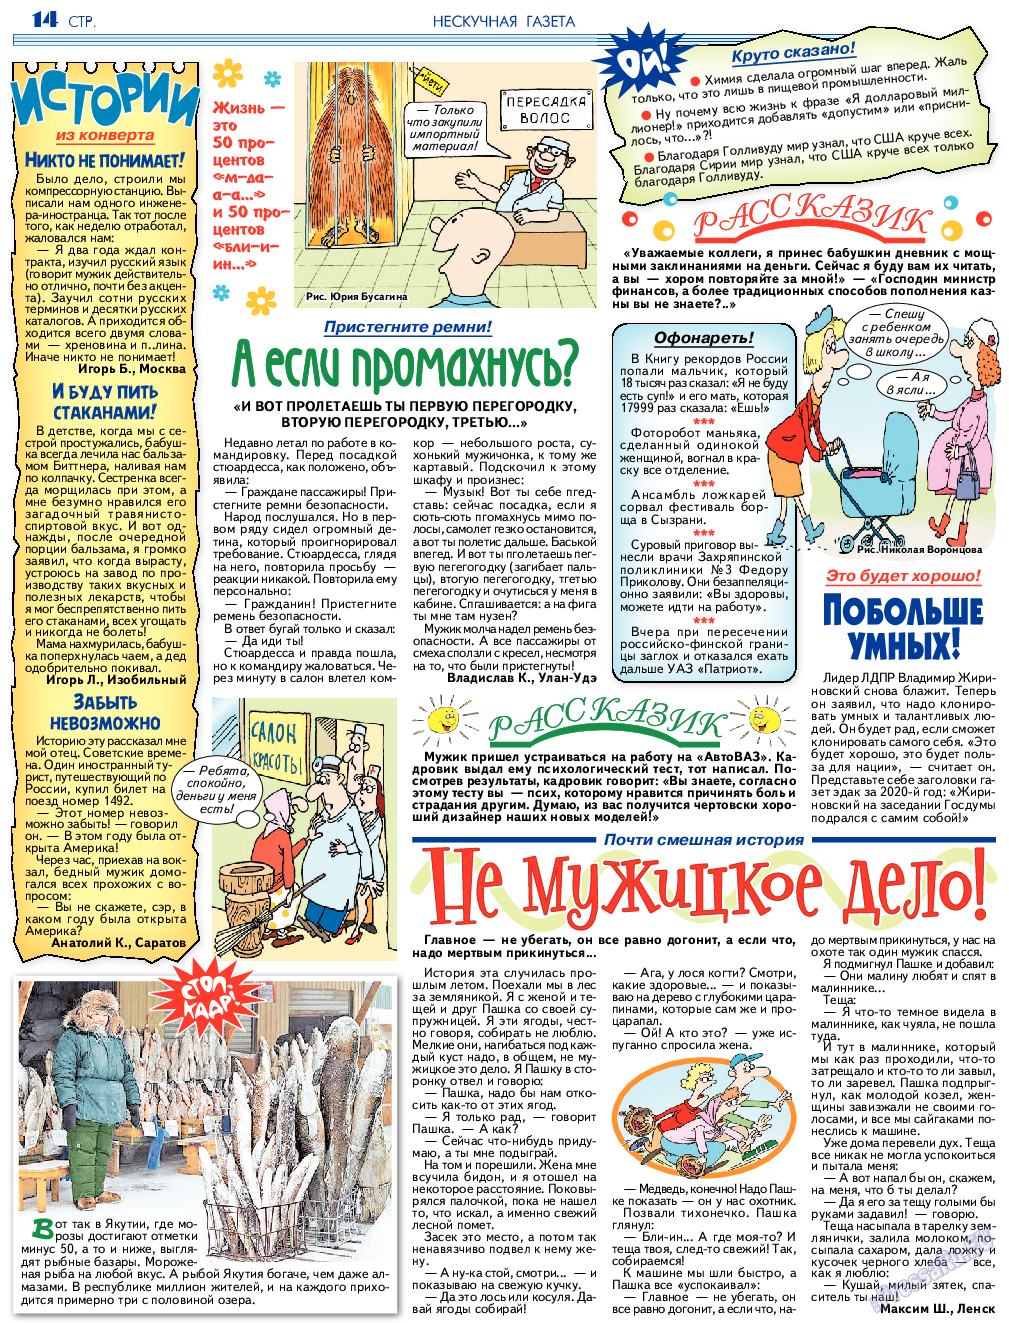 Нескучная газета (журнал). 2018 год, номер 6, стр. 14